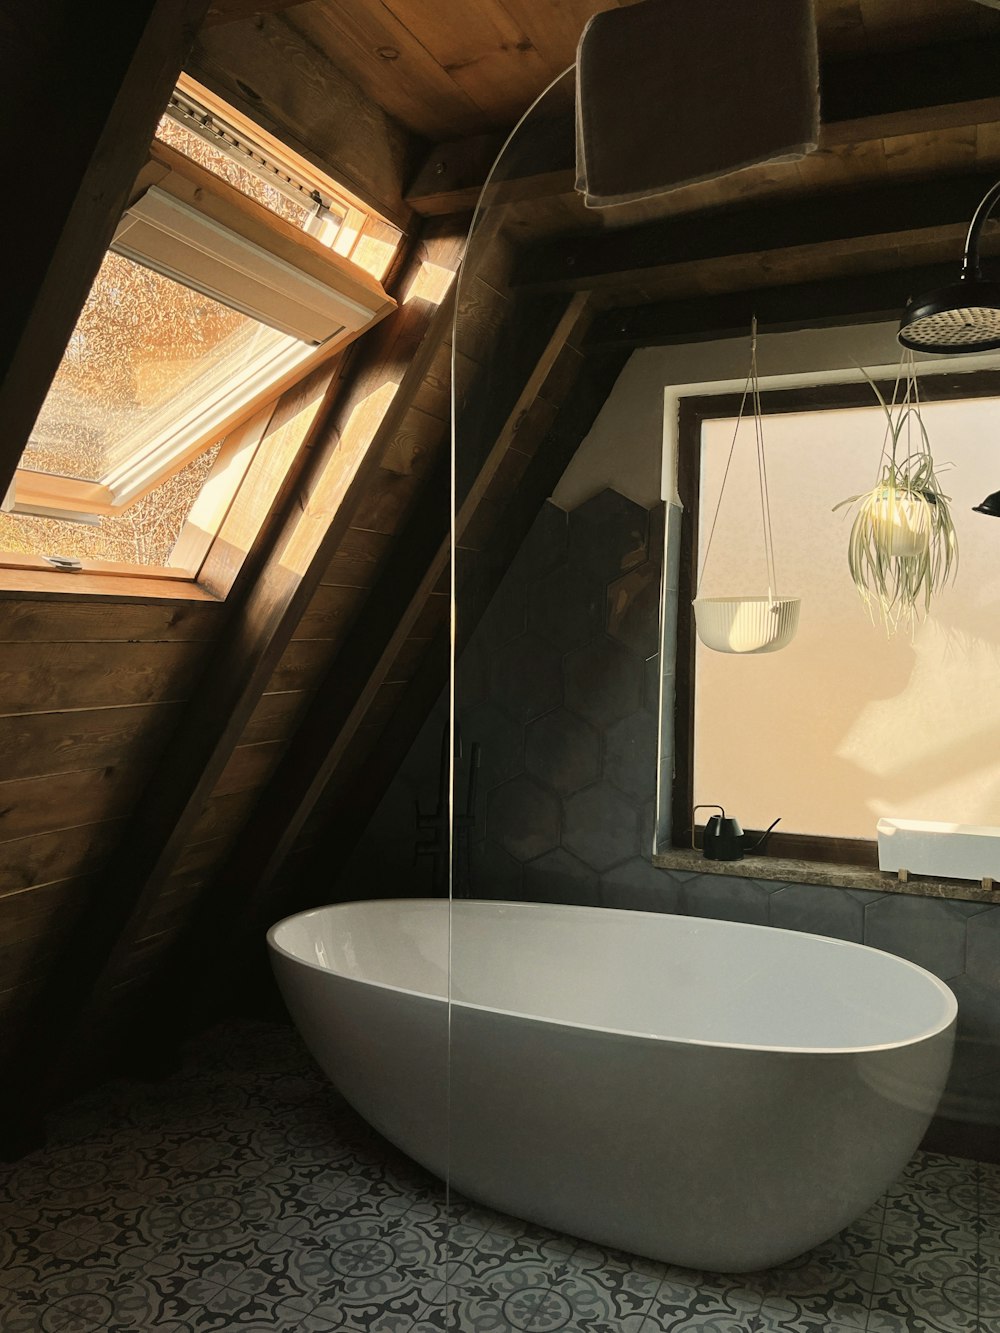 a large white bath tub sitting in a bathroom next to a window